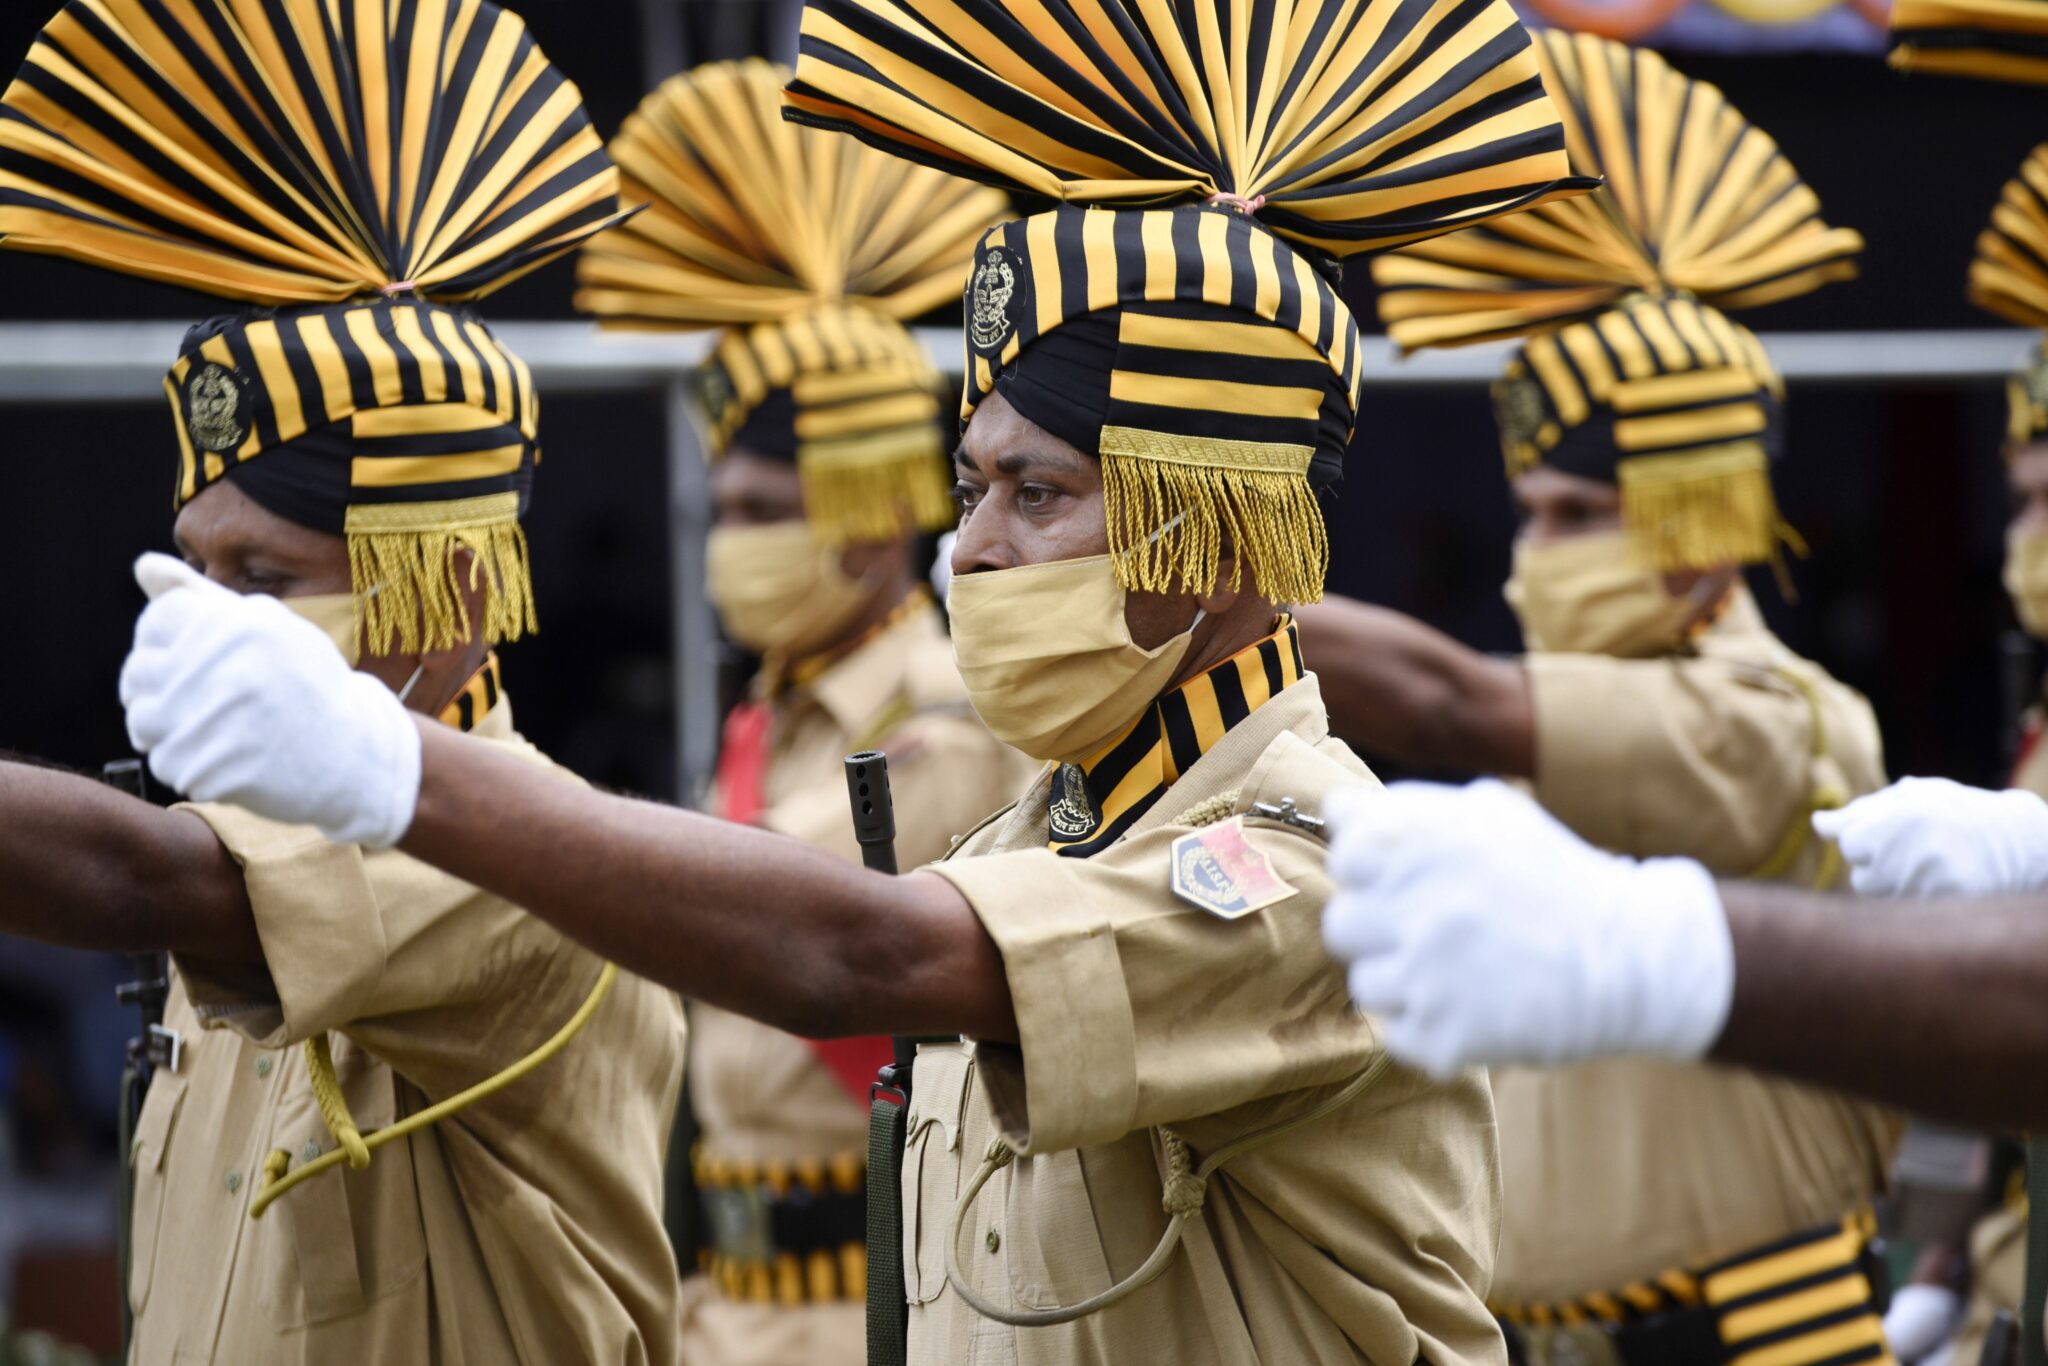 Индийские военнослужащие на праздновании дня независимости страны. Фото Talukdar/SIPA/Scanpix/Leta